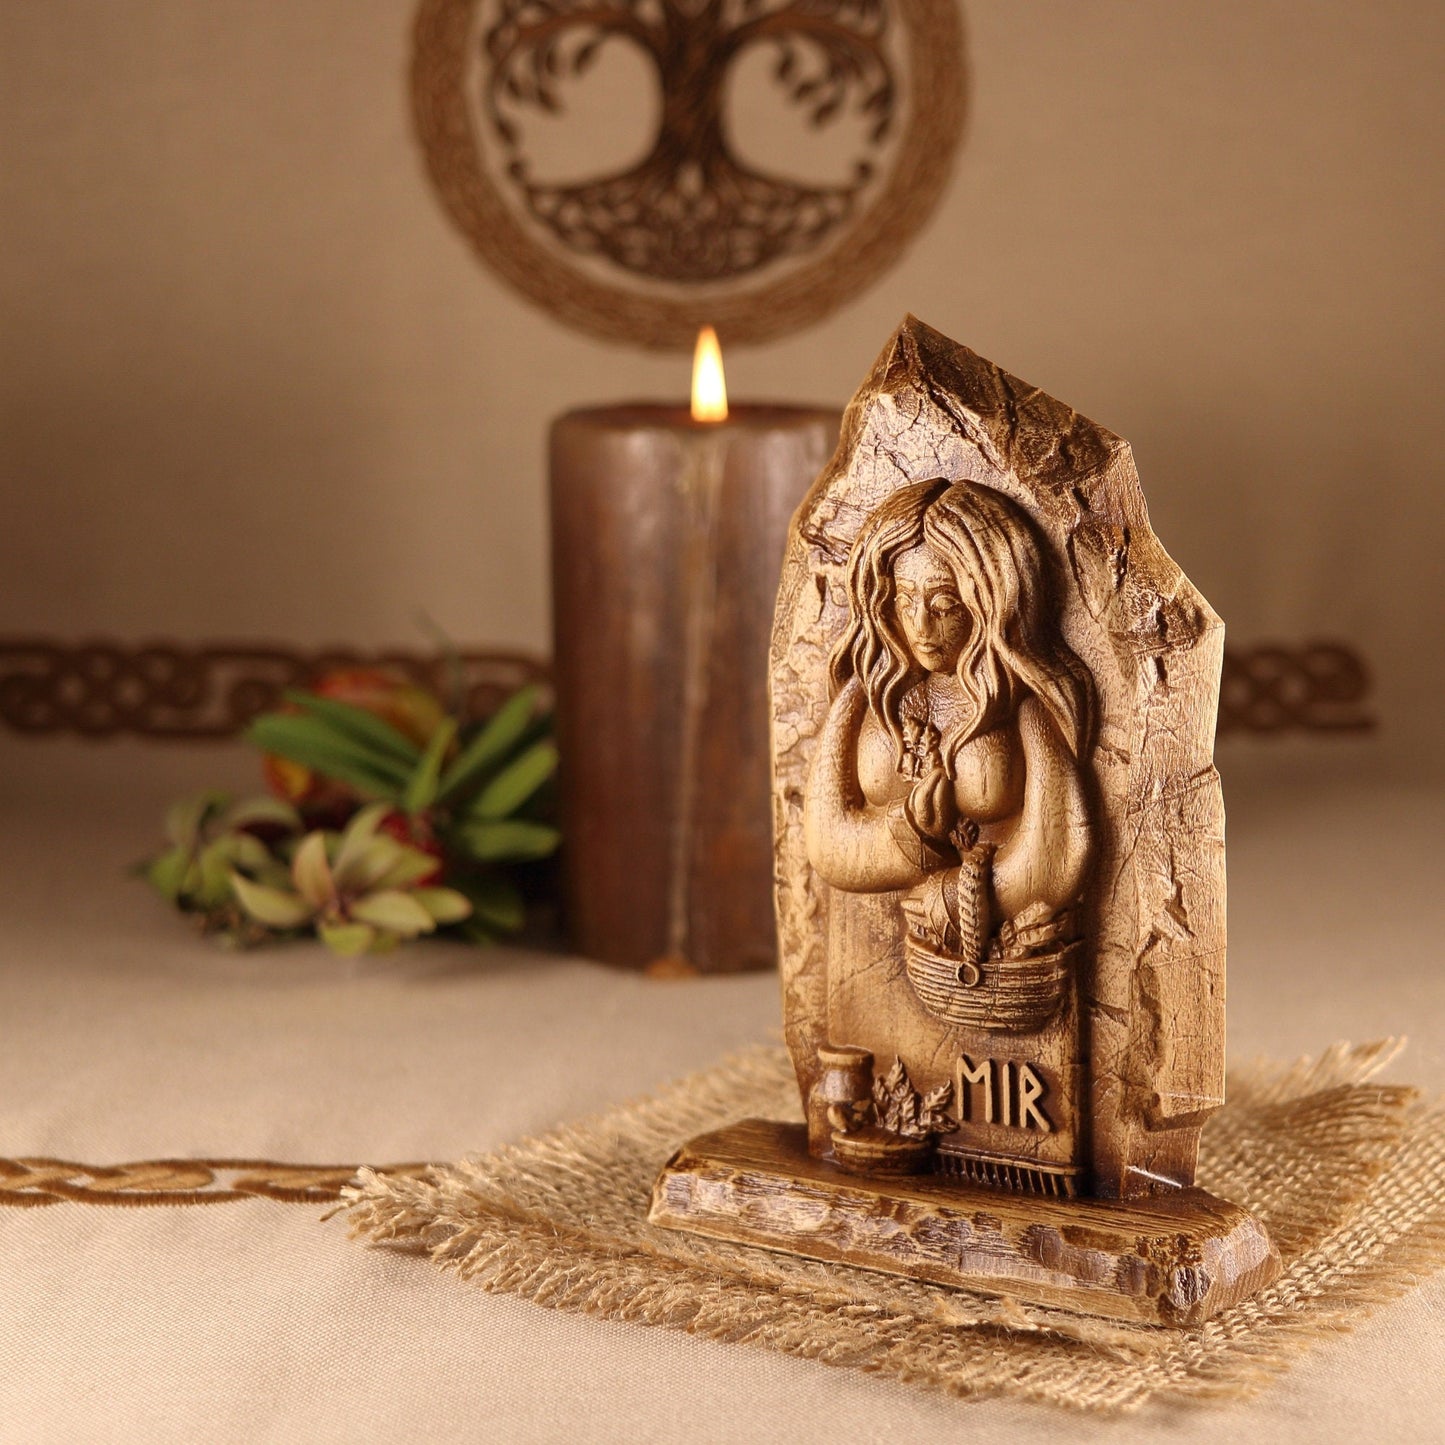 Eir, Norse pagan mini altar, wood sculpture art